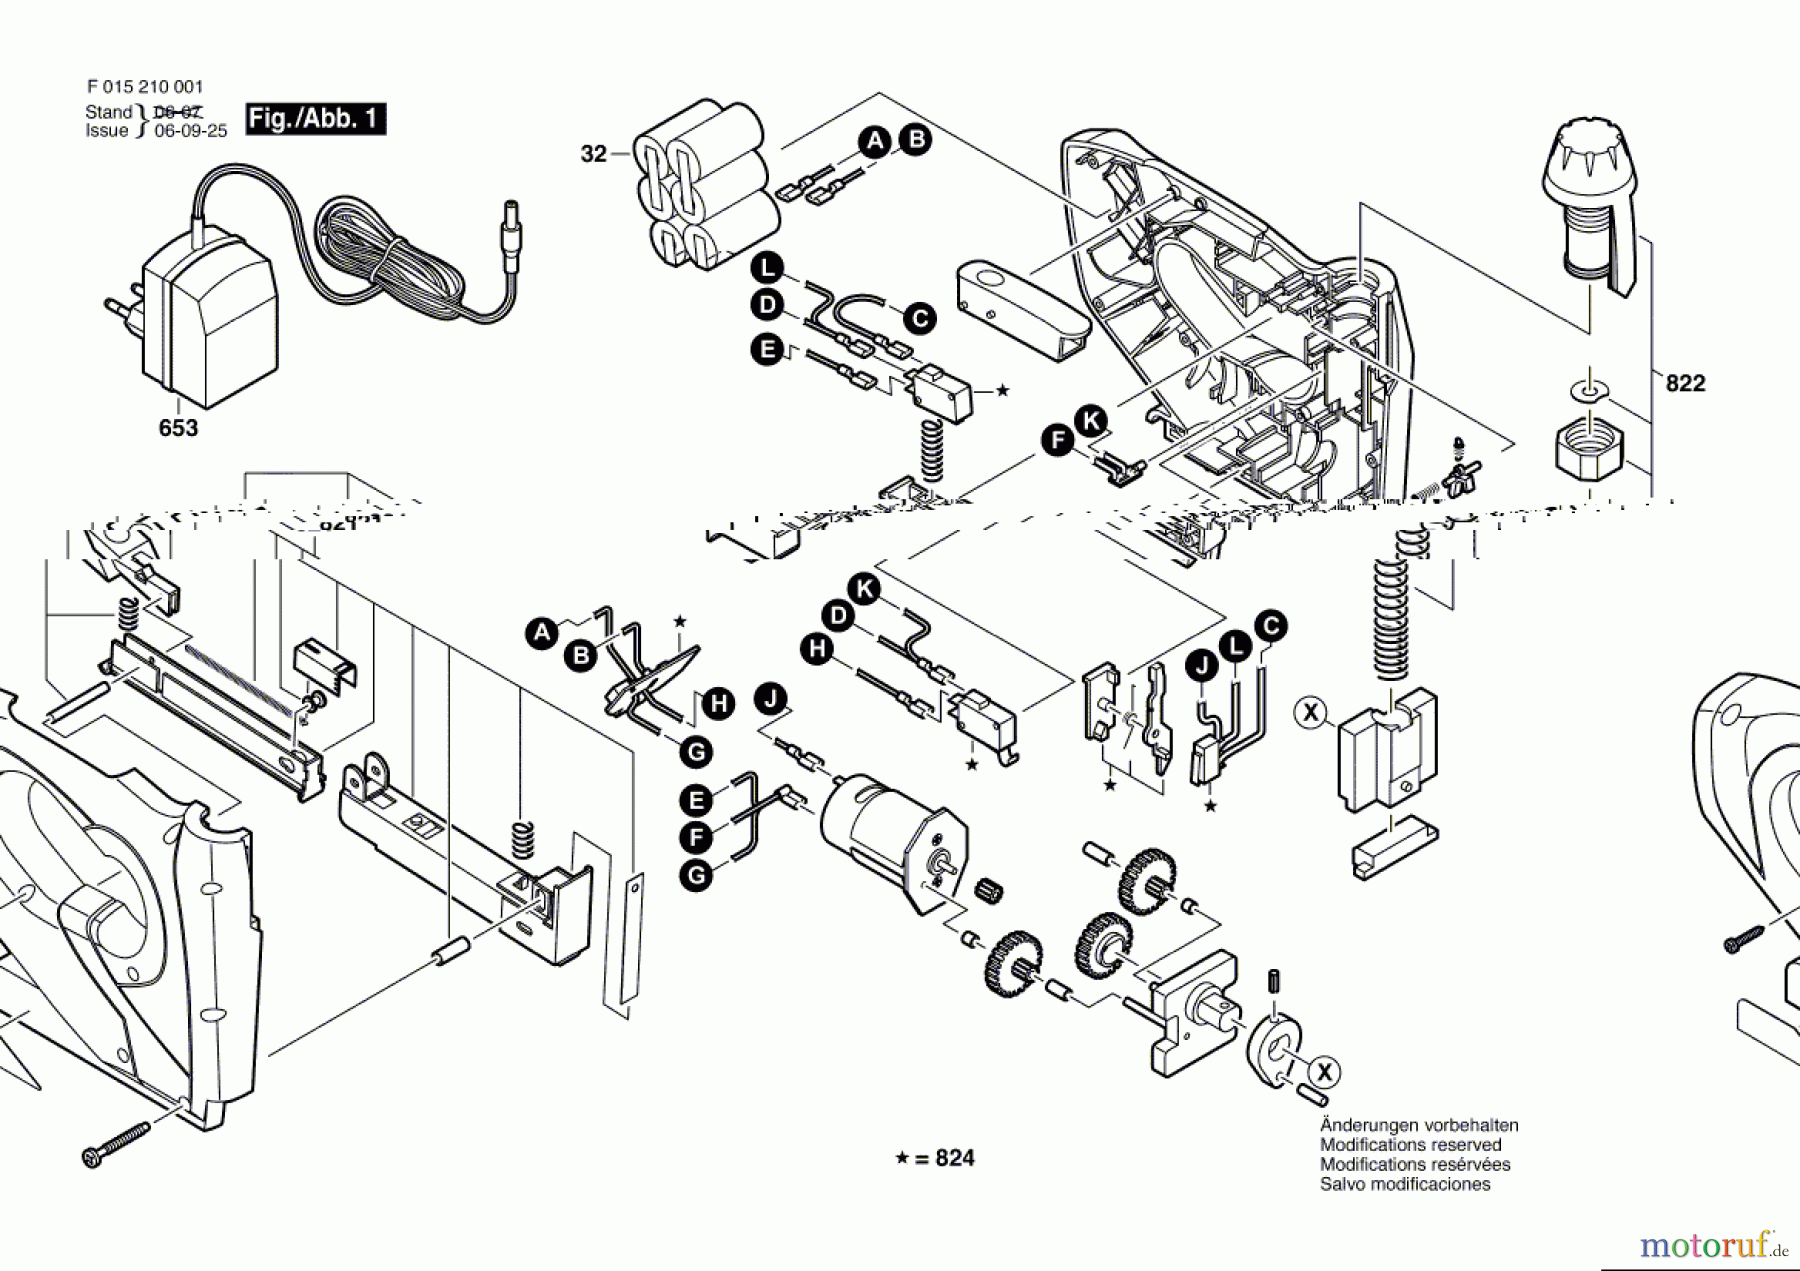  Bosch Werkzeug Tacker 2100 Seite 1